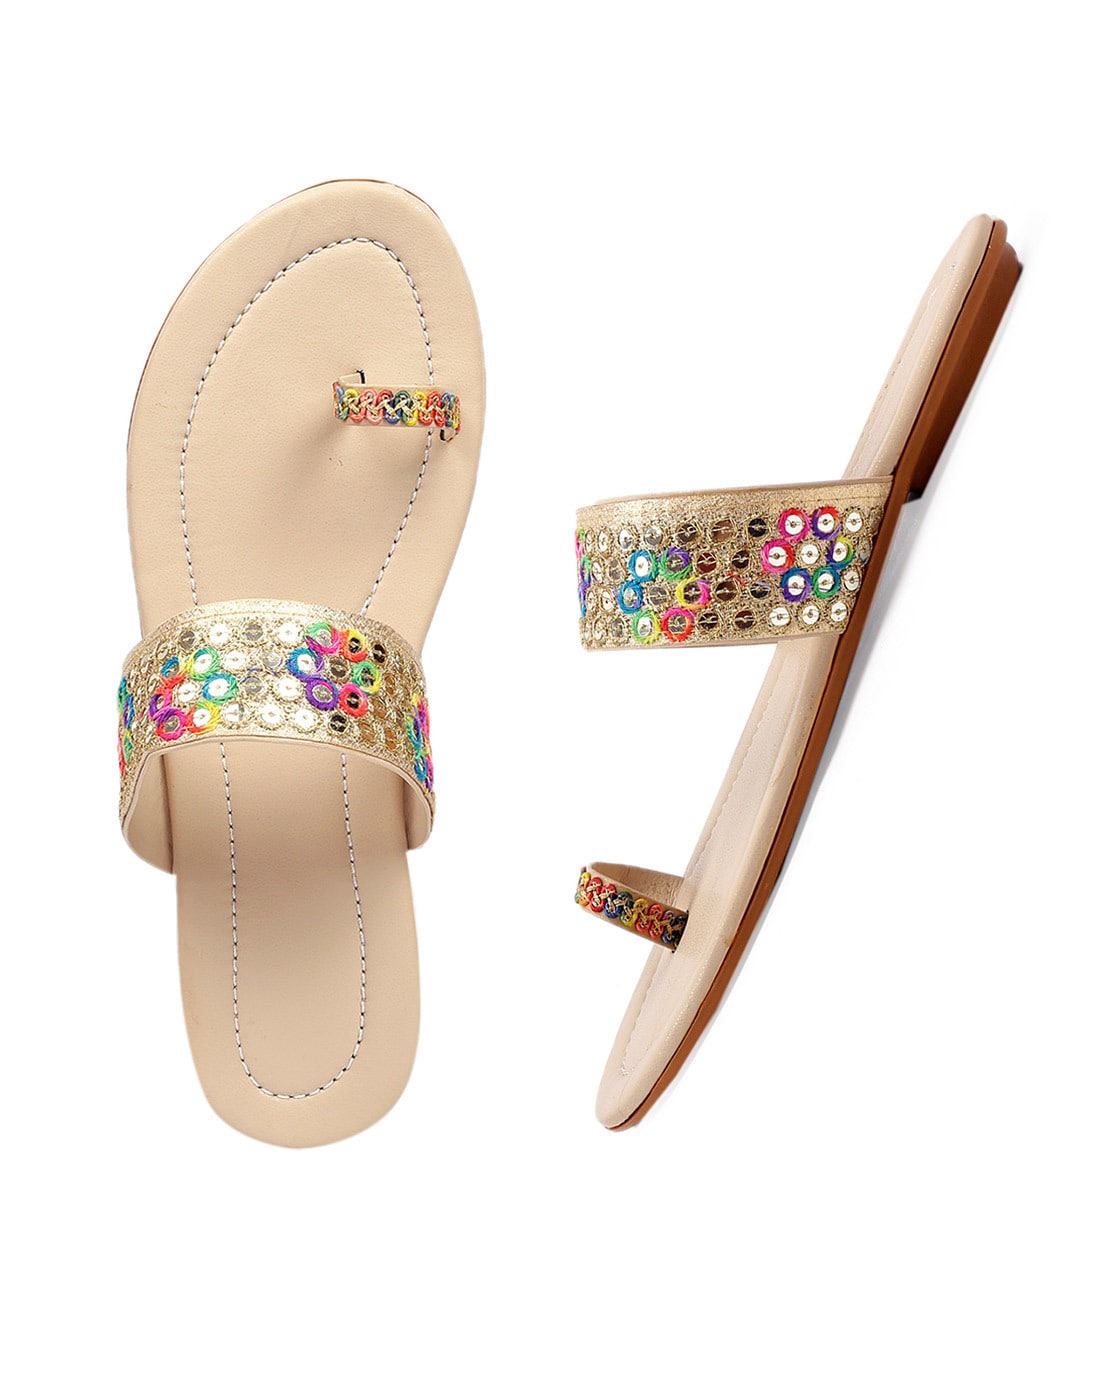 Women Flat Sandals – Sreeleathers Ltd